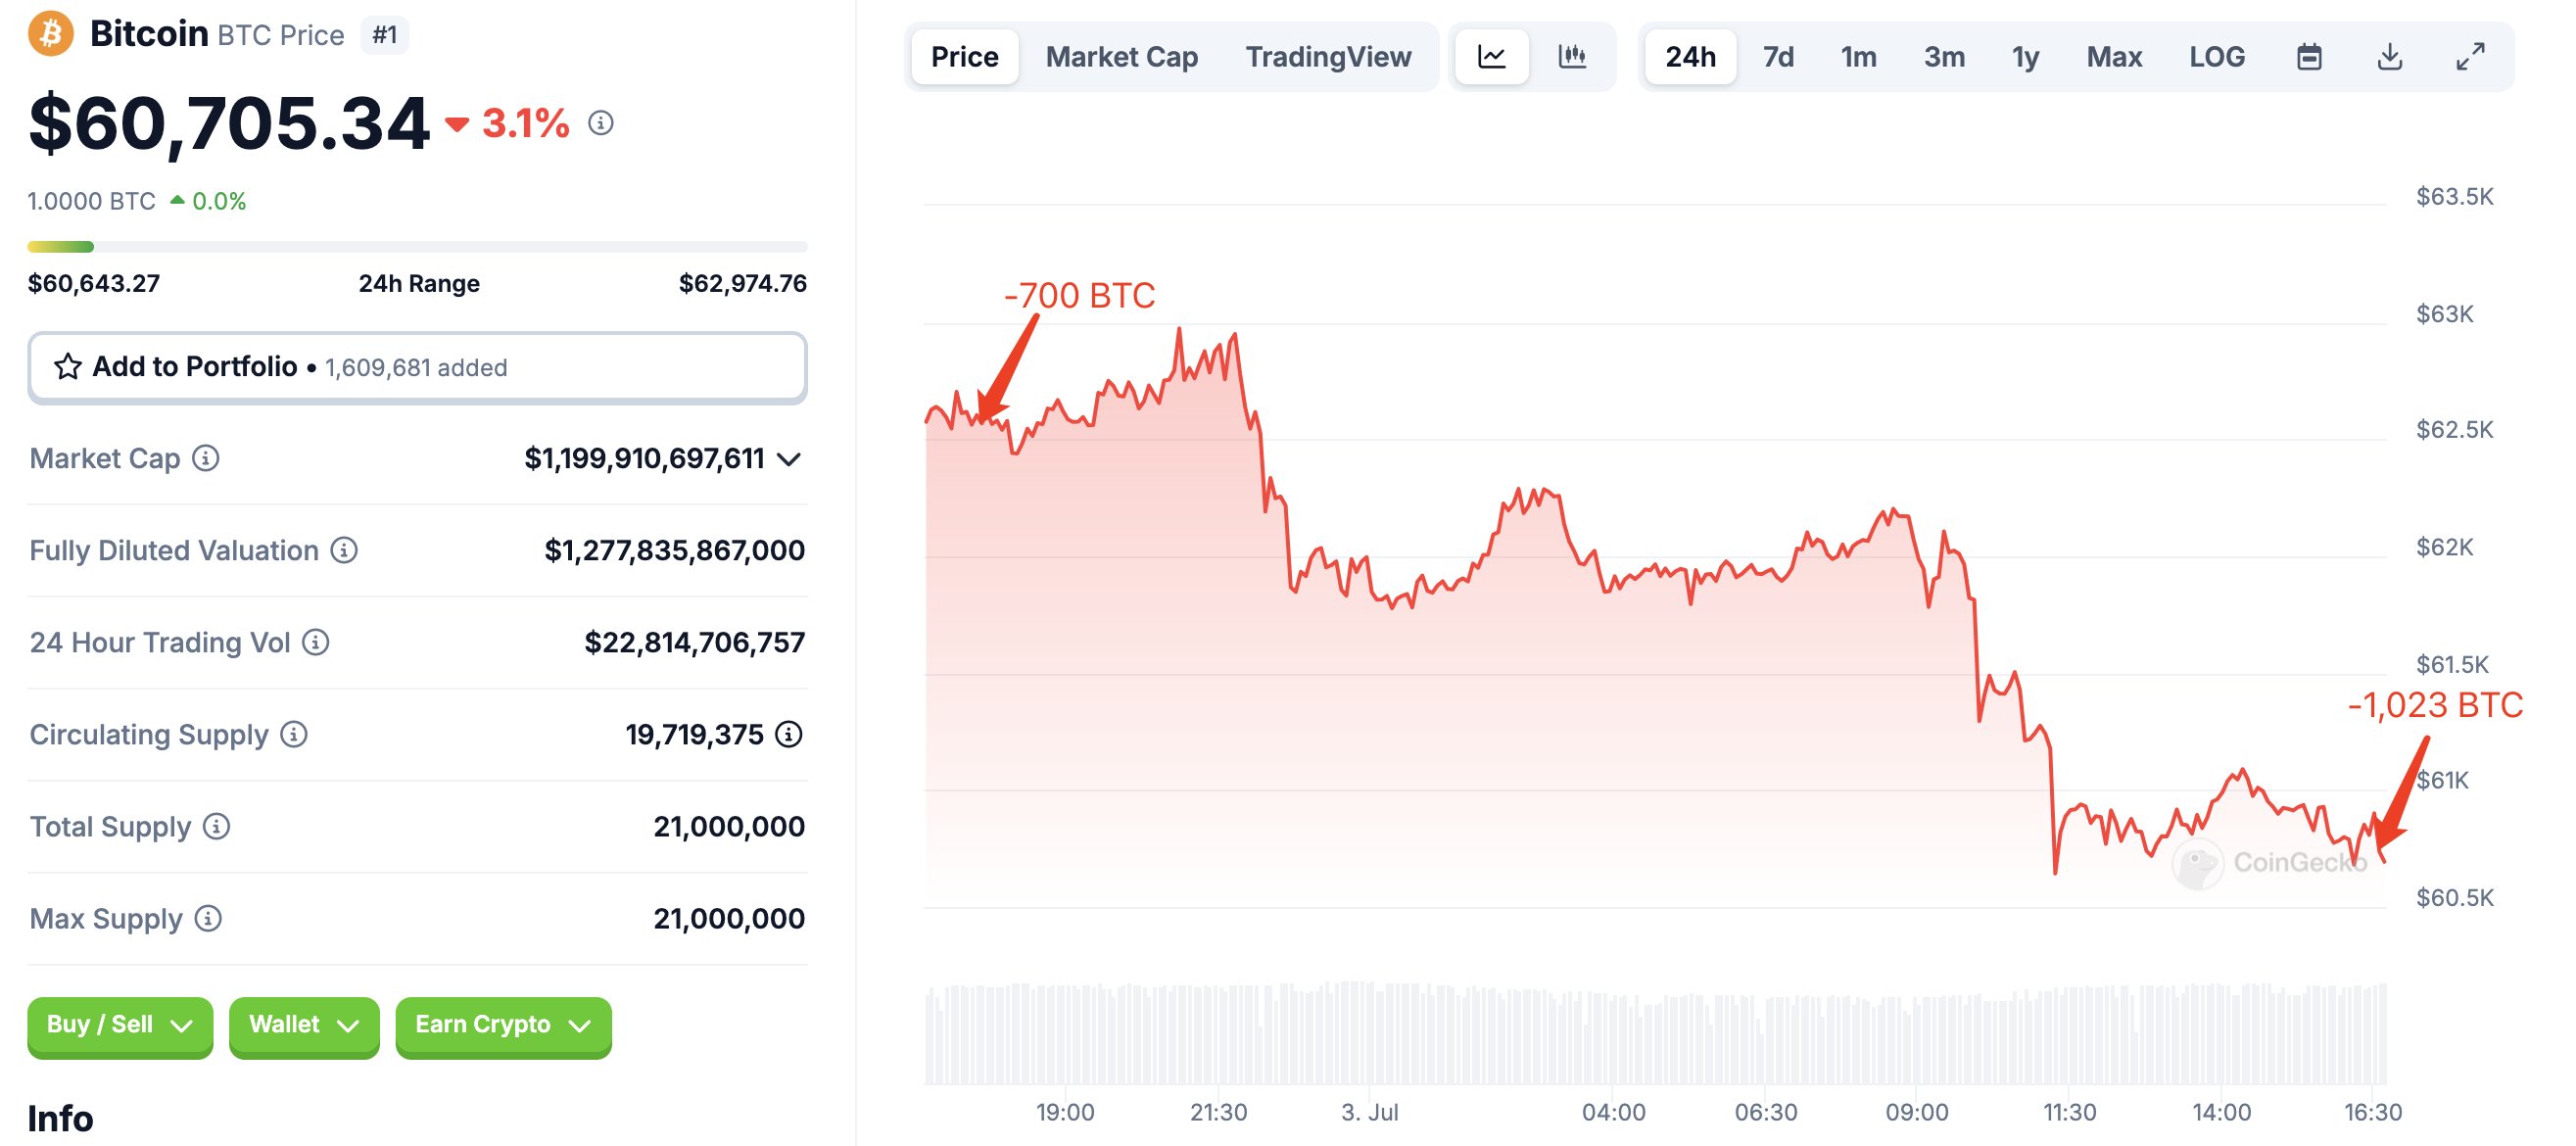 Nguyên nhân đẩy giá Bitcoin xuống dưới 60k và chỉ số biểu đồ cho thấy khả năng hoàn trả từ Mt Gox